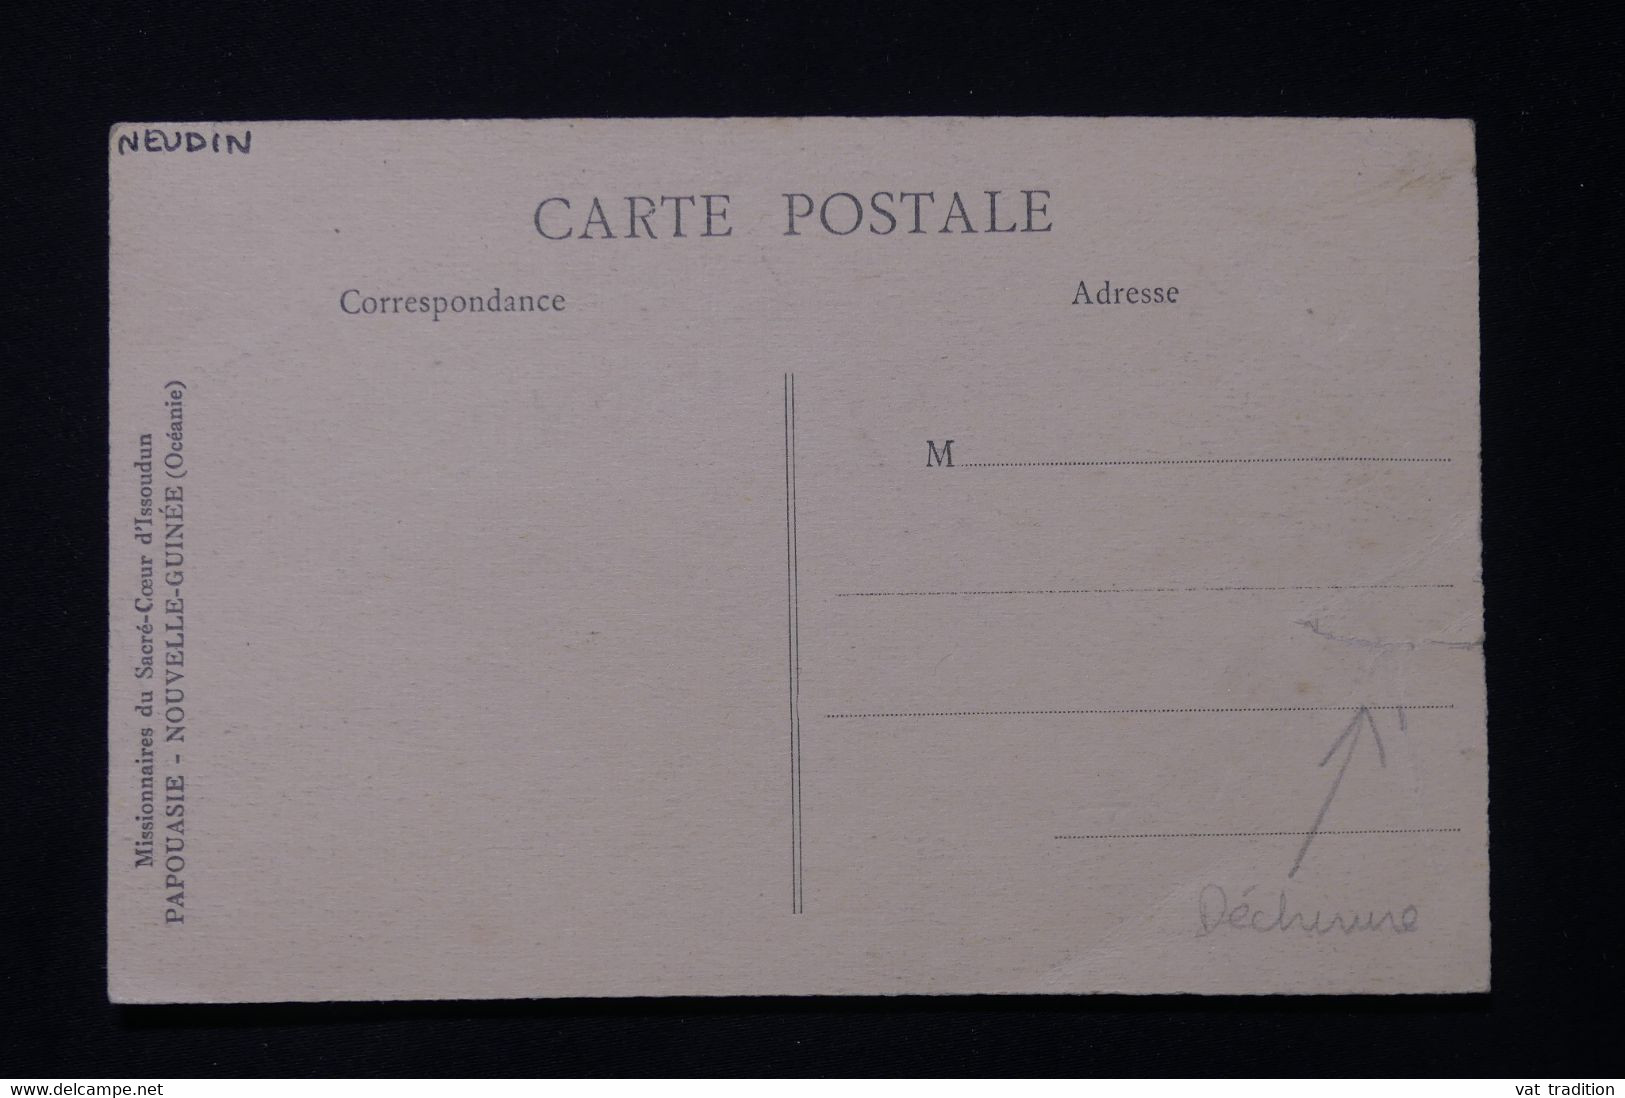 PAPOUASIE NOUVELLE GUINÉE - Carte Postale - Vieillards D'Ouroun - L 82473 - Papouasie-Nouvelle-Guinée